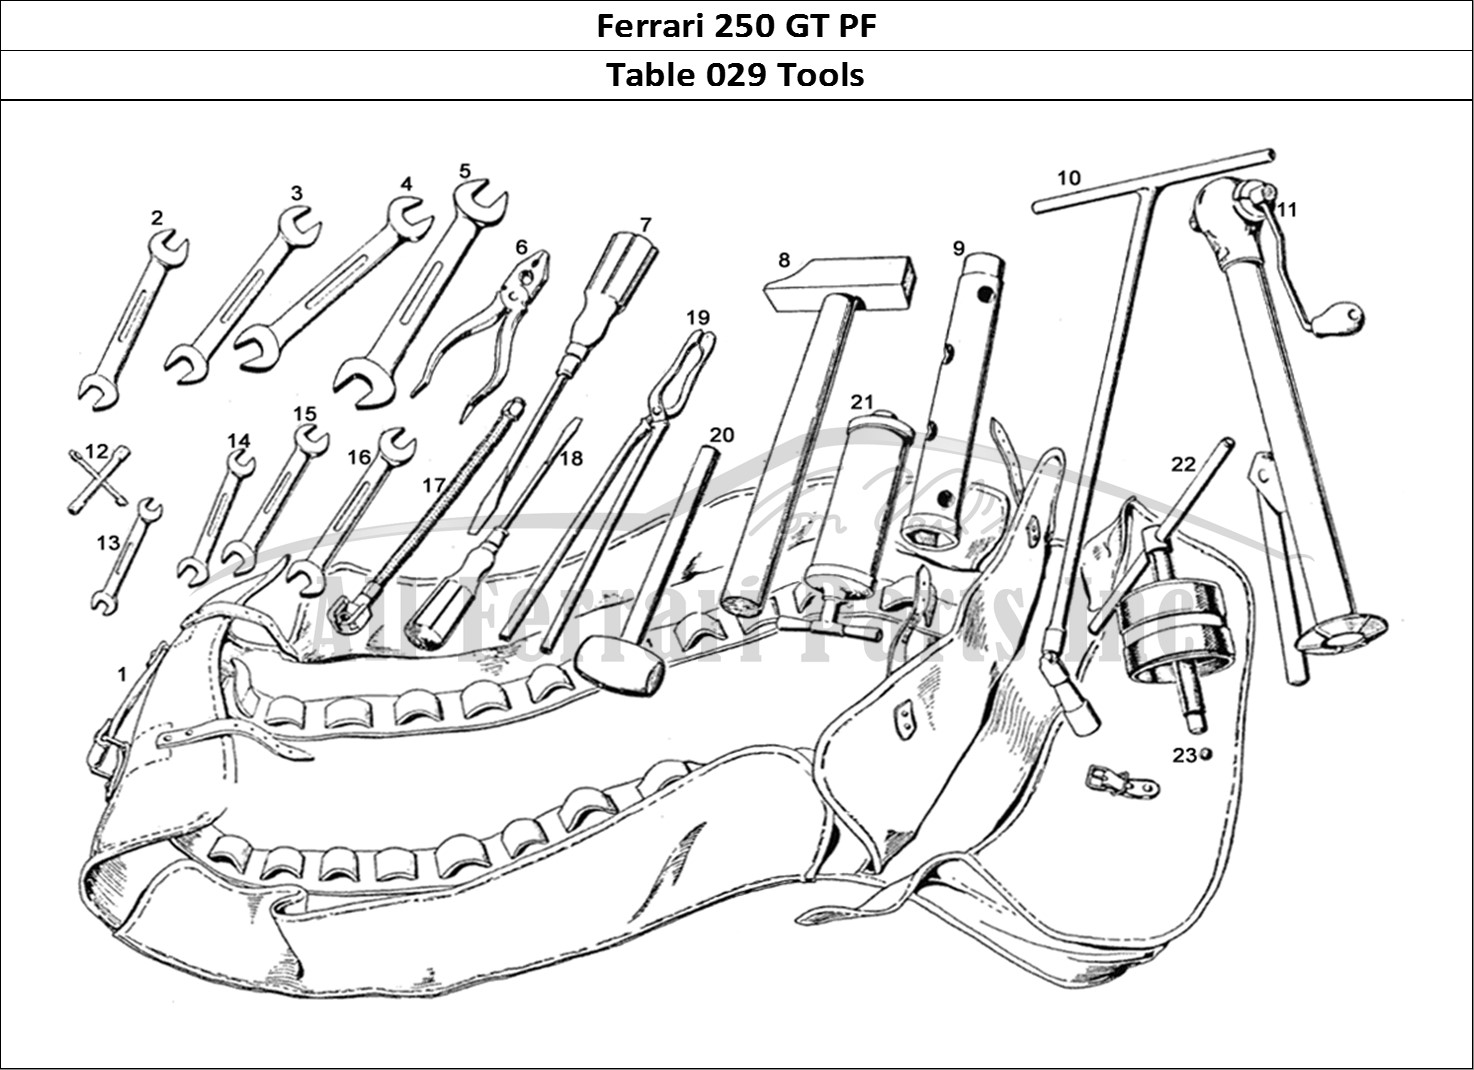 Ferrari Parts Ferrari 250 GTE (1957) Page 029 Normal Tools